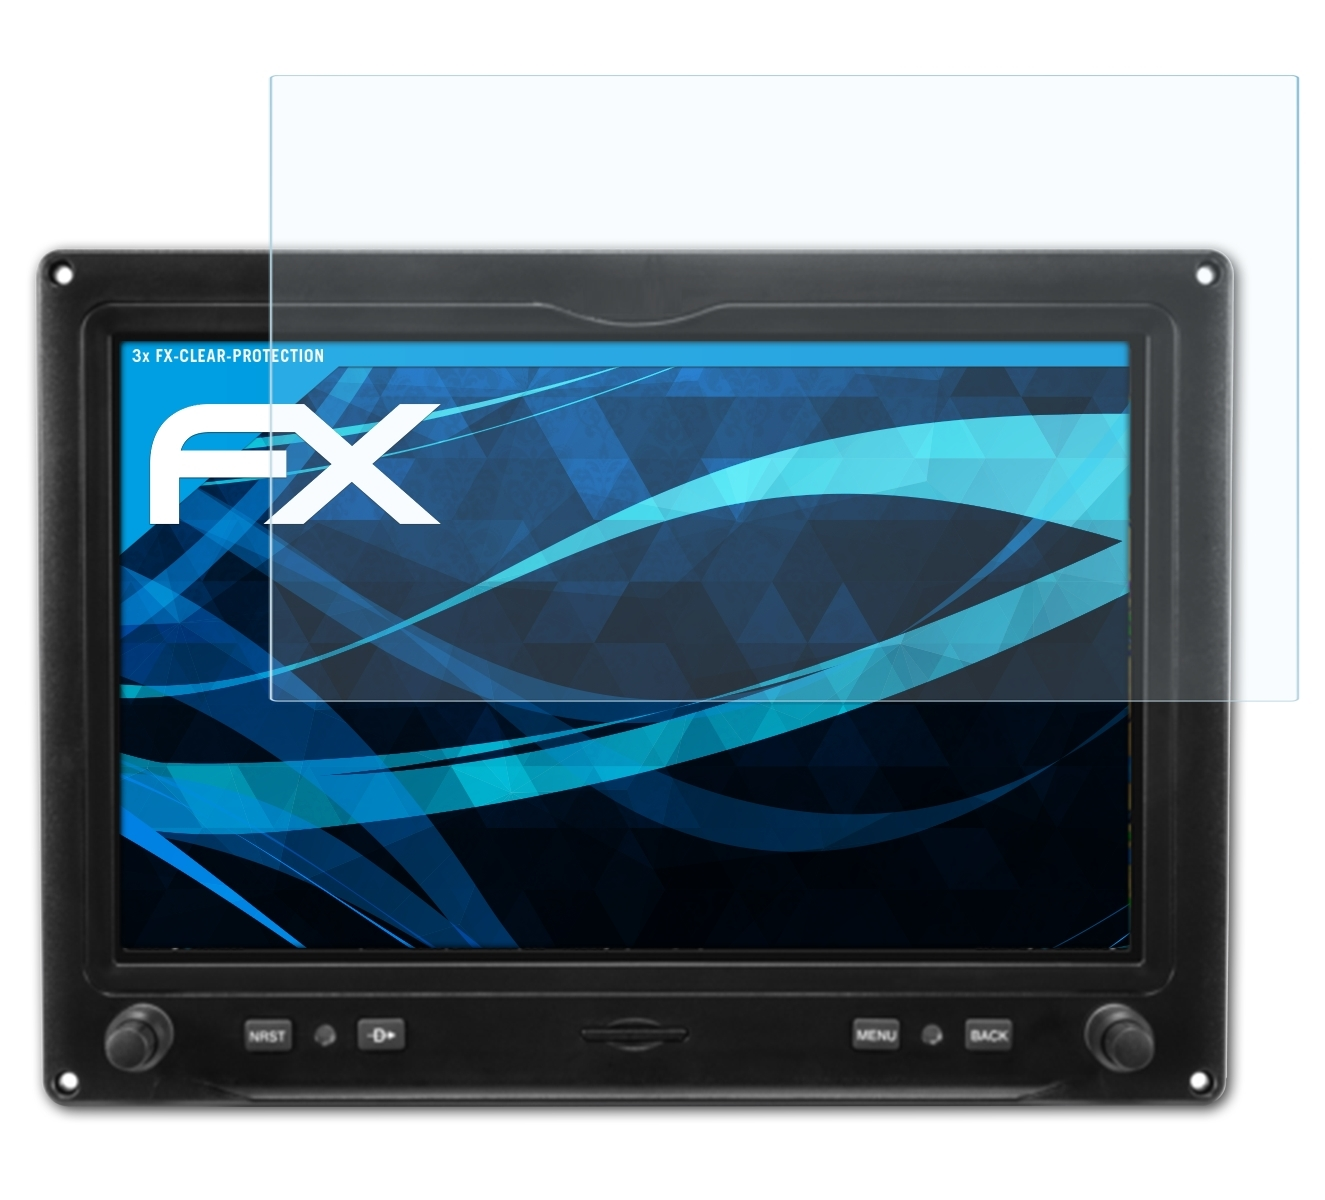 Displayschutz(für 3x FX-Clear G3X Garmin (10.6 Inch)) ATFOLIX Touch